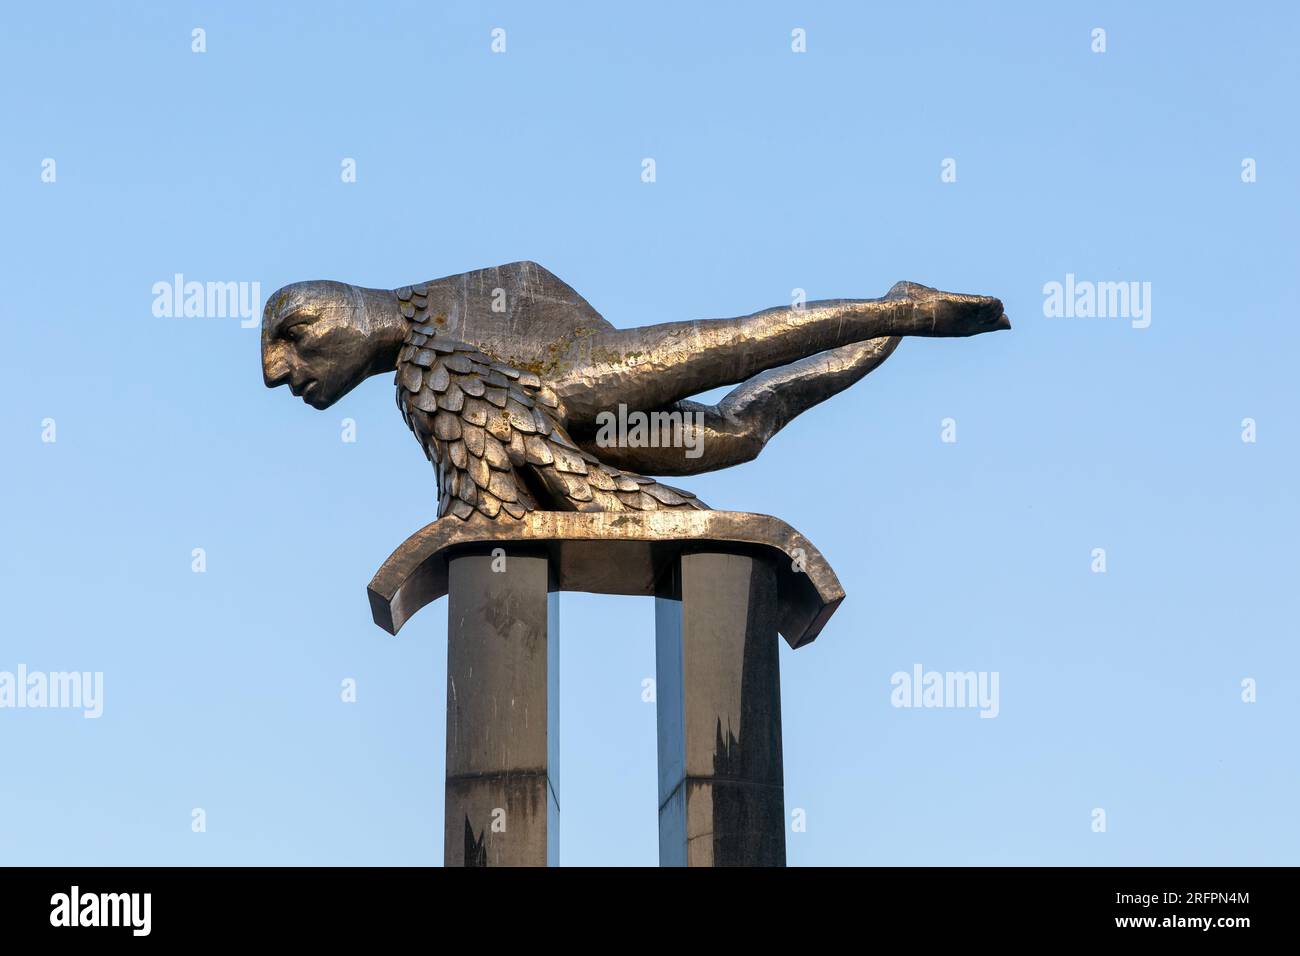 El Sireno sculpture, The Merman, by Francisco Leiro 1991, Praza Porto do Sol, city centre of Vigo, Galicia, Spain Stock Photo